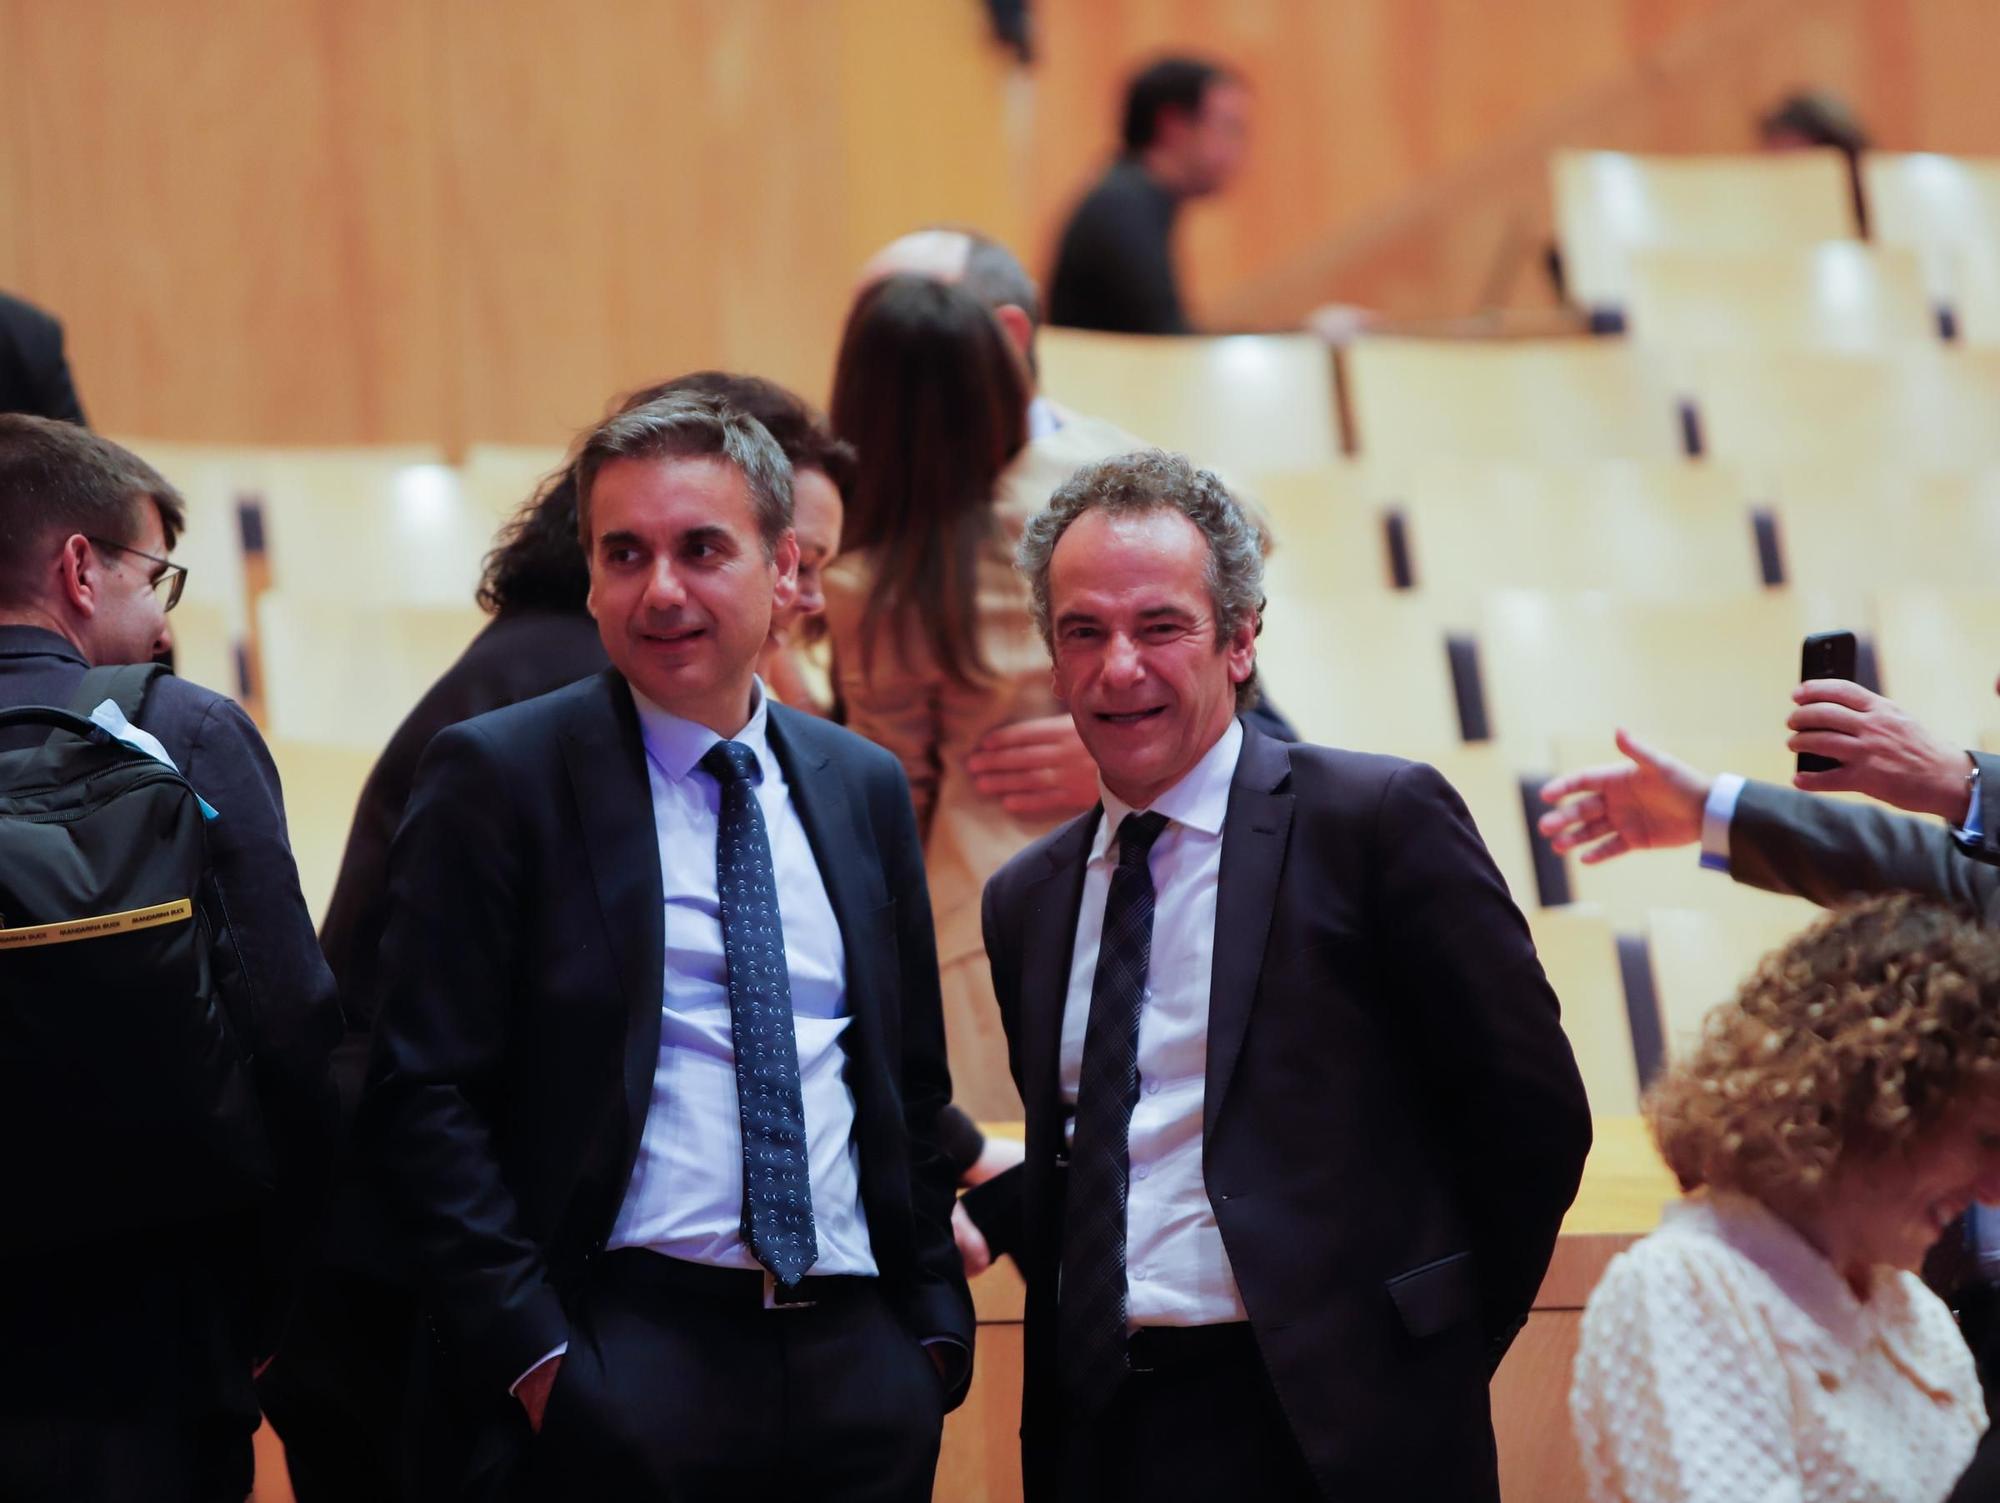 En imágenes | ADEA premia a las empresas de Aragón más relevantes